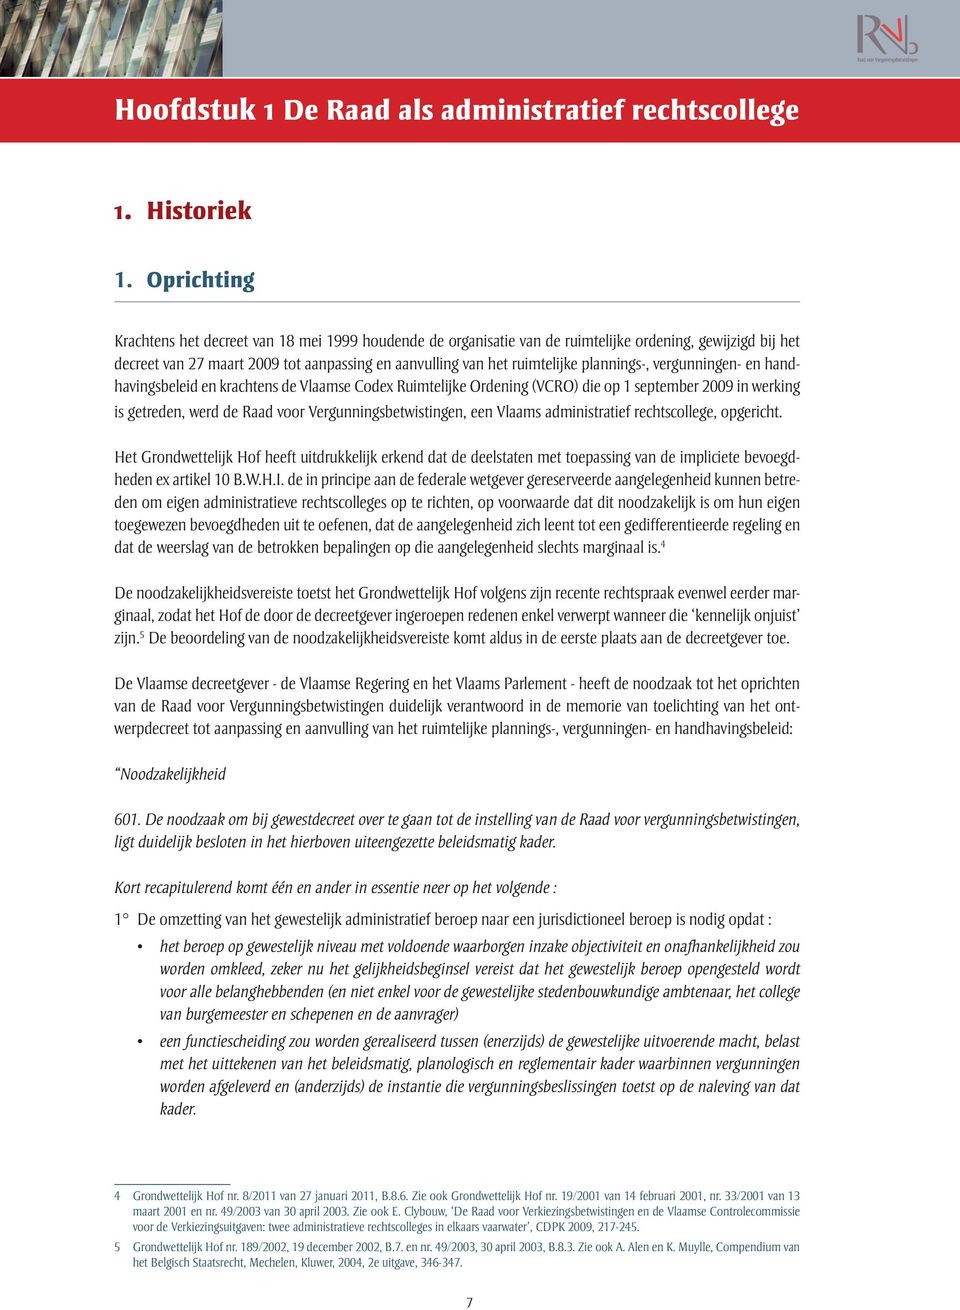 plannings-, vergunningen- en handhavingsbeleid en krachtens de Vlaamse Codex Ruimtelijke Ordening (VCRO) die op 1 september 2009 in werking is getreden, werd de Raad voor Vergunningsbetwistingen, een